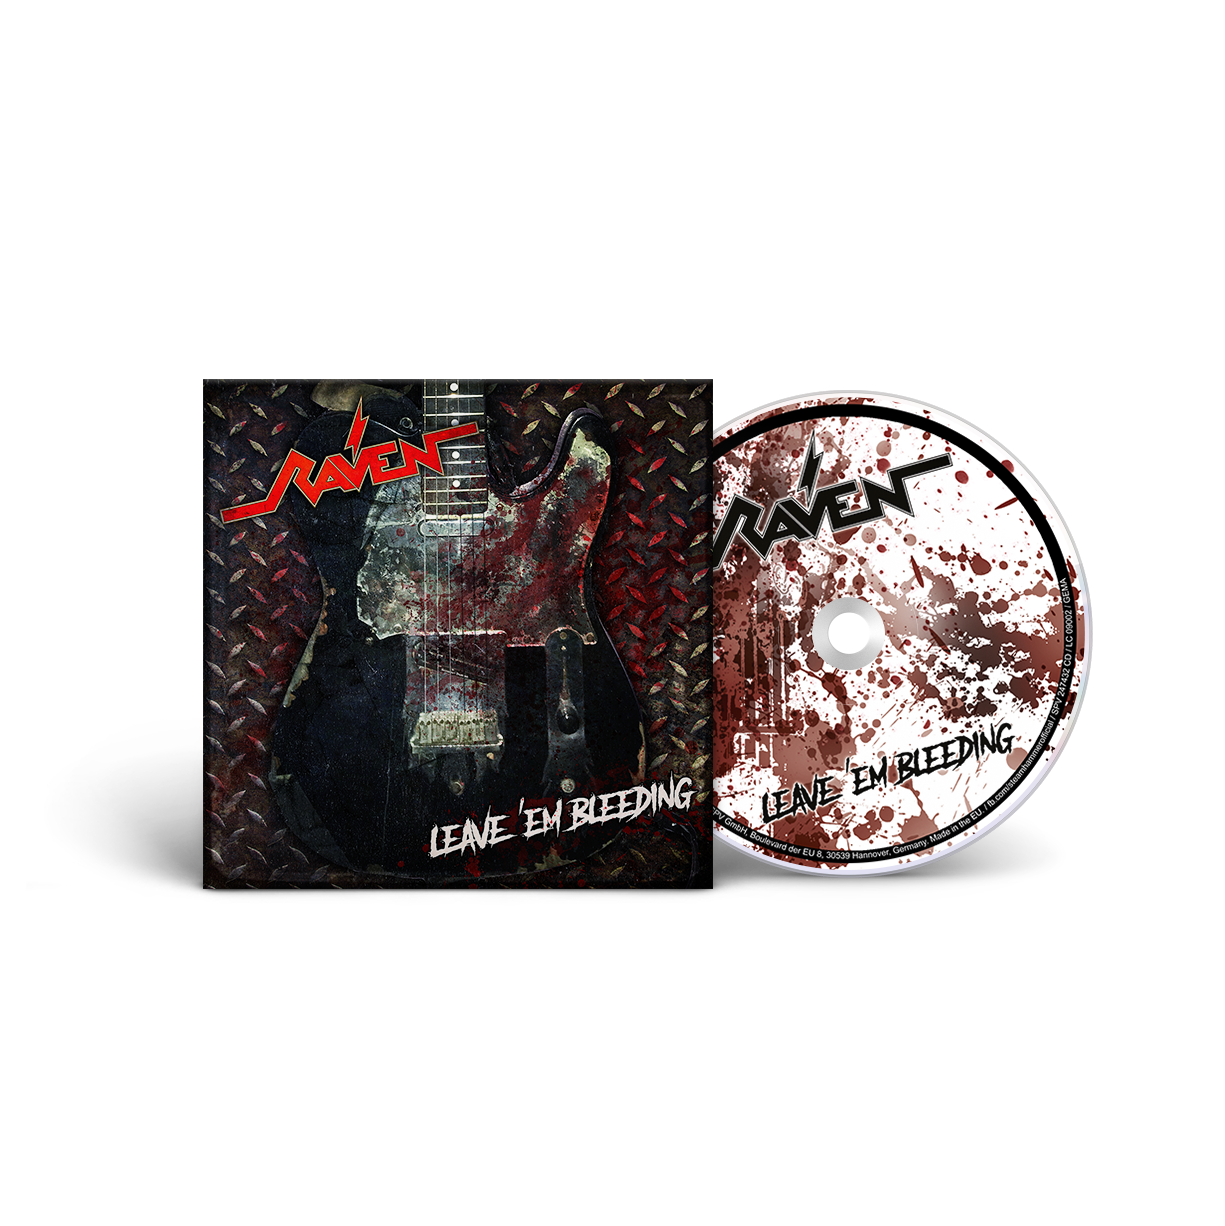 Raven "Leave ‘Em Bleeding" CD